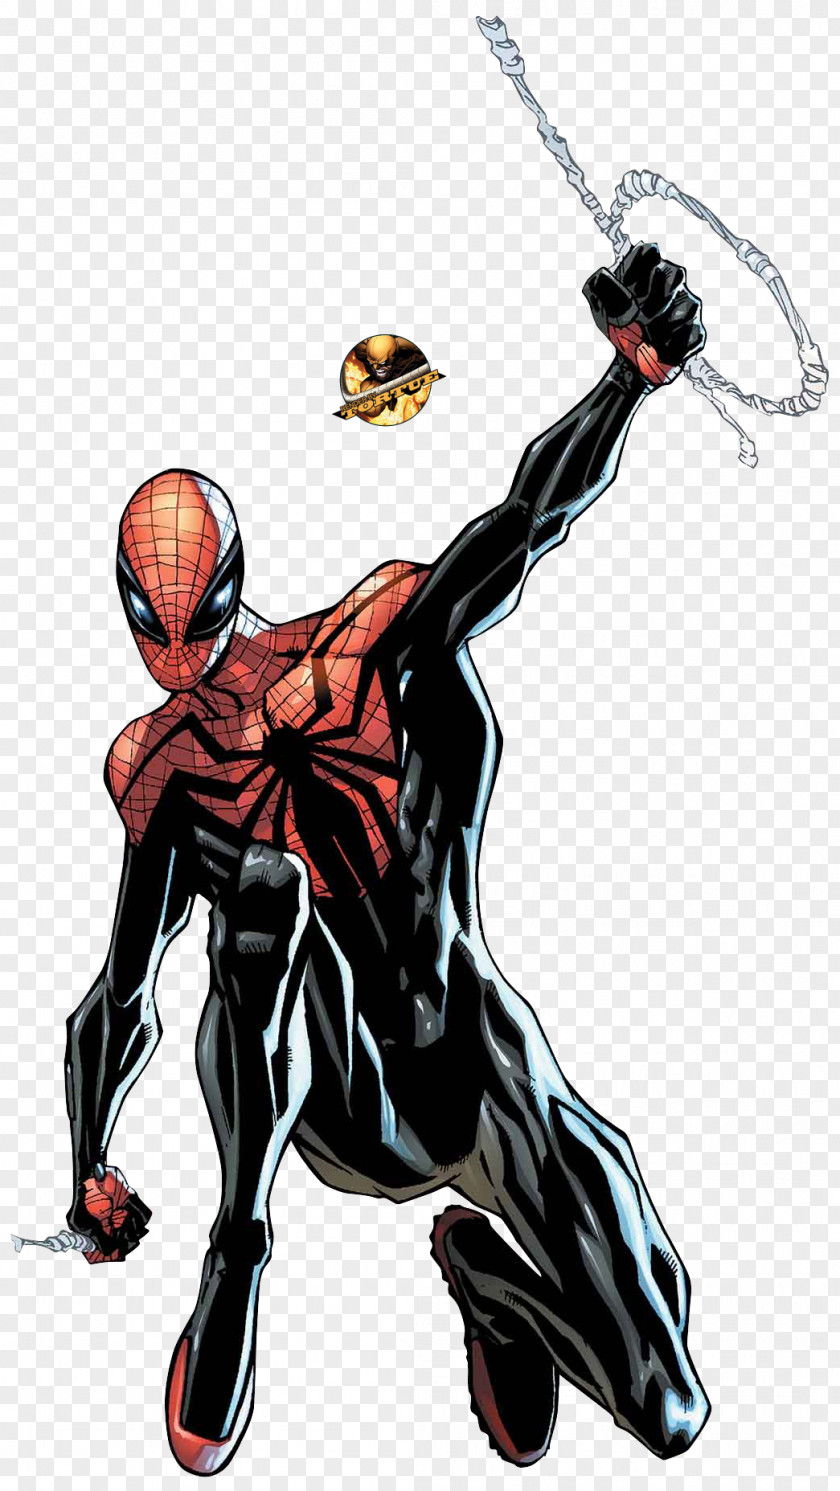 Spider The Superior Spider-Man Venom Dr. Otto Octavius 2099 PNG